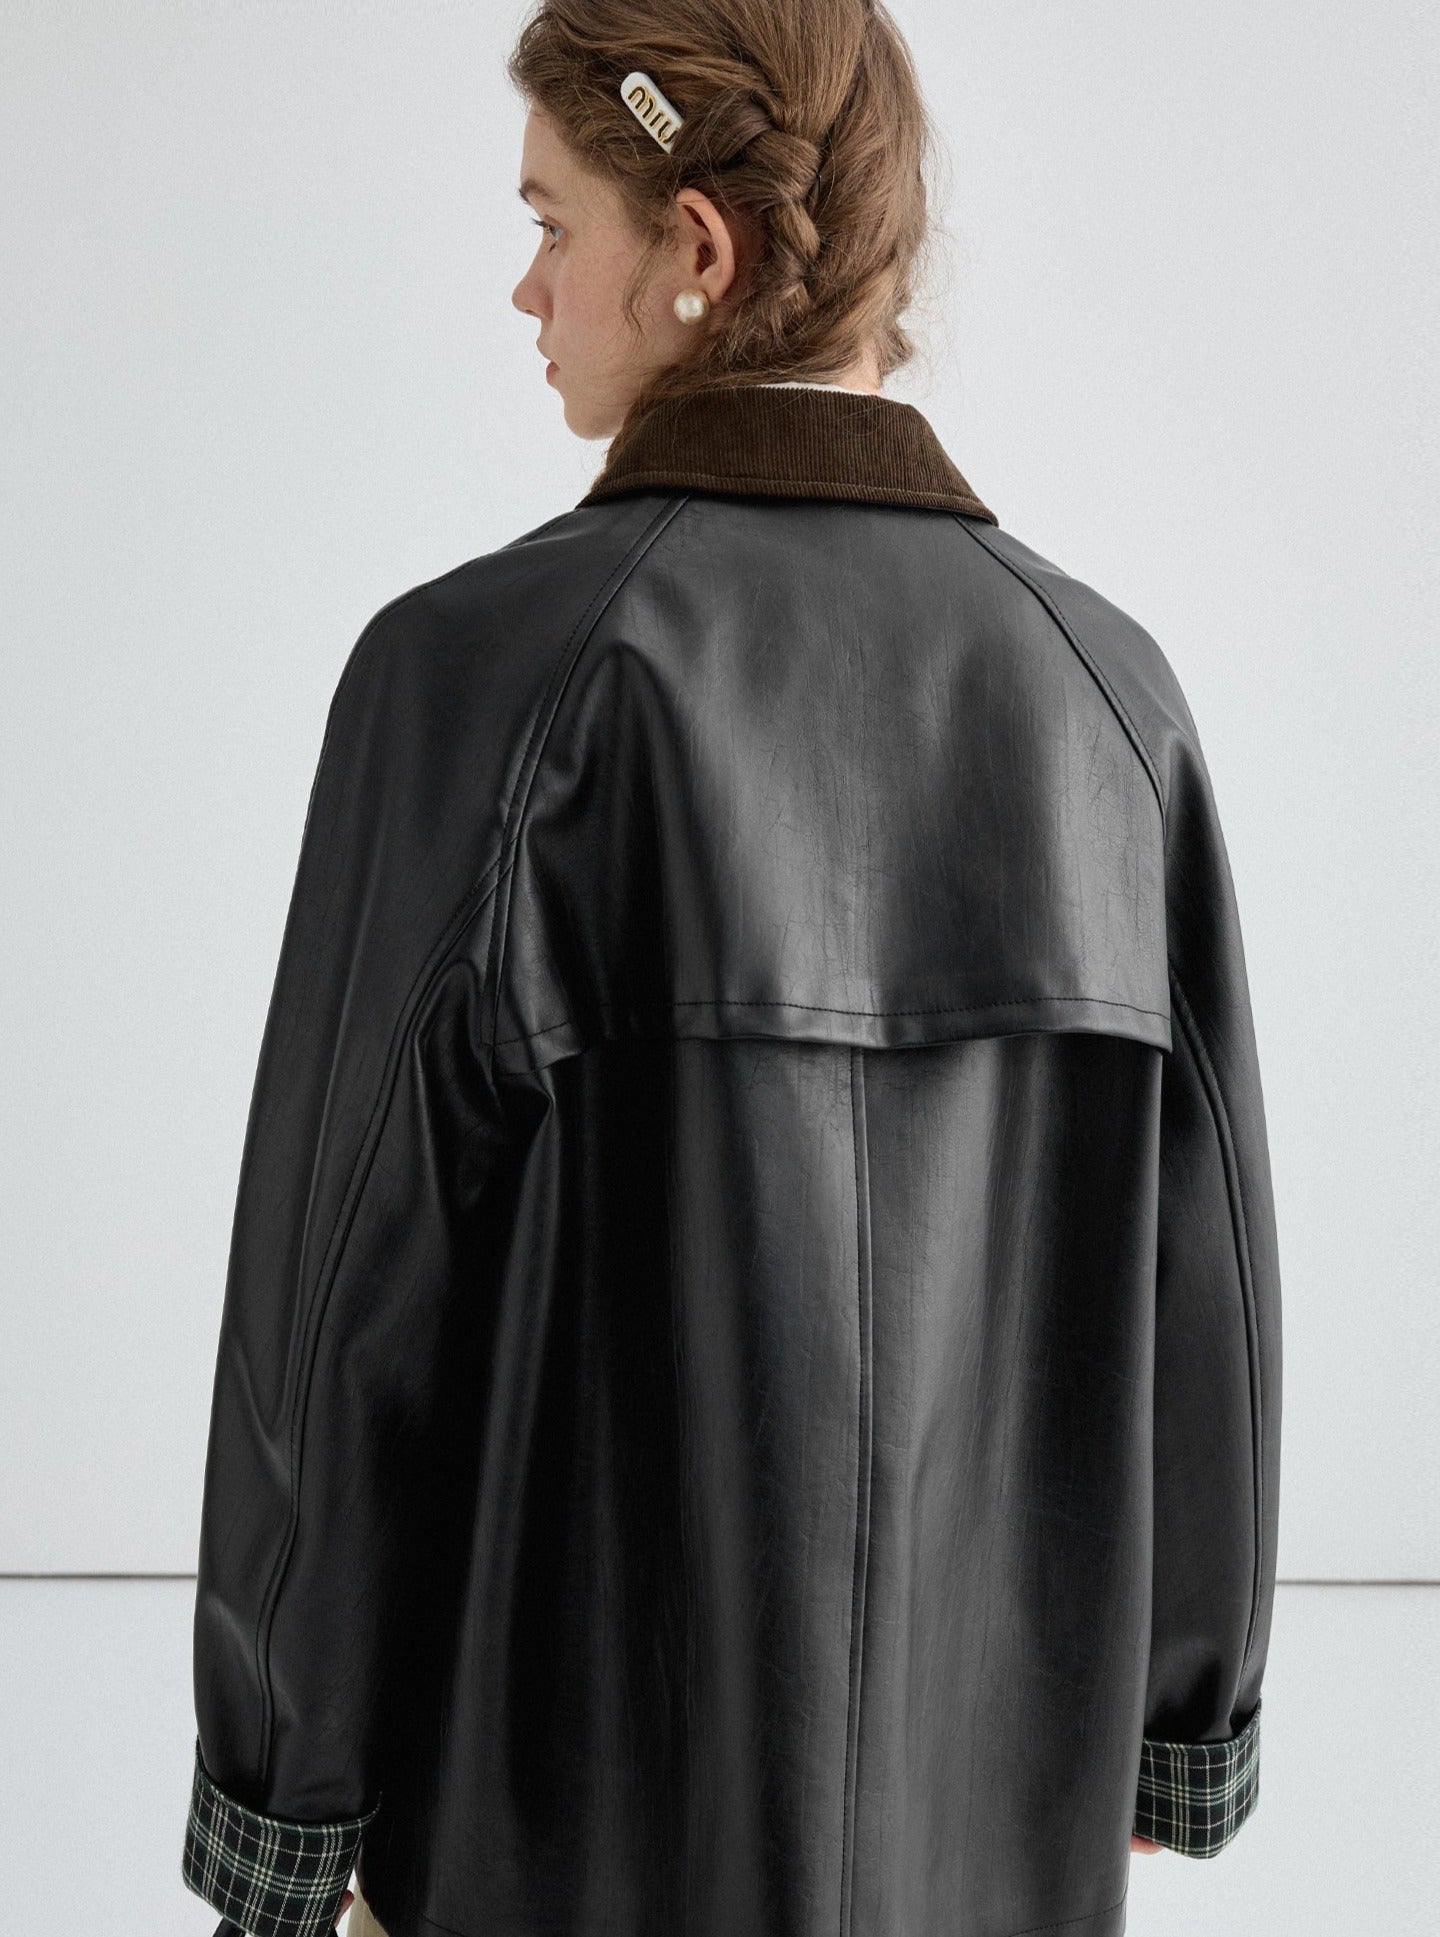 Black Leather Fashion Jacket